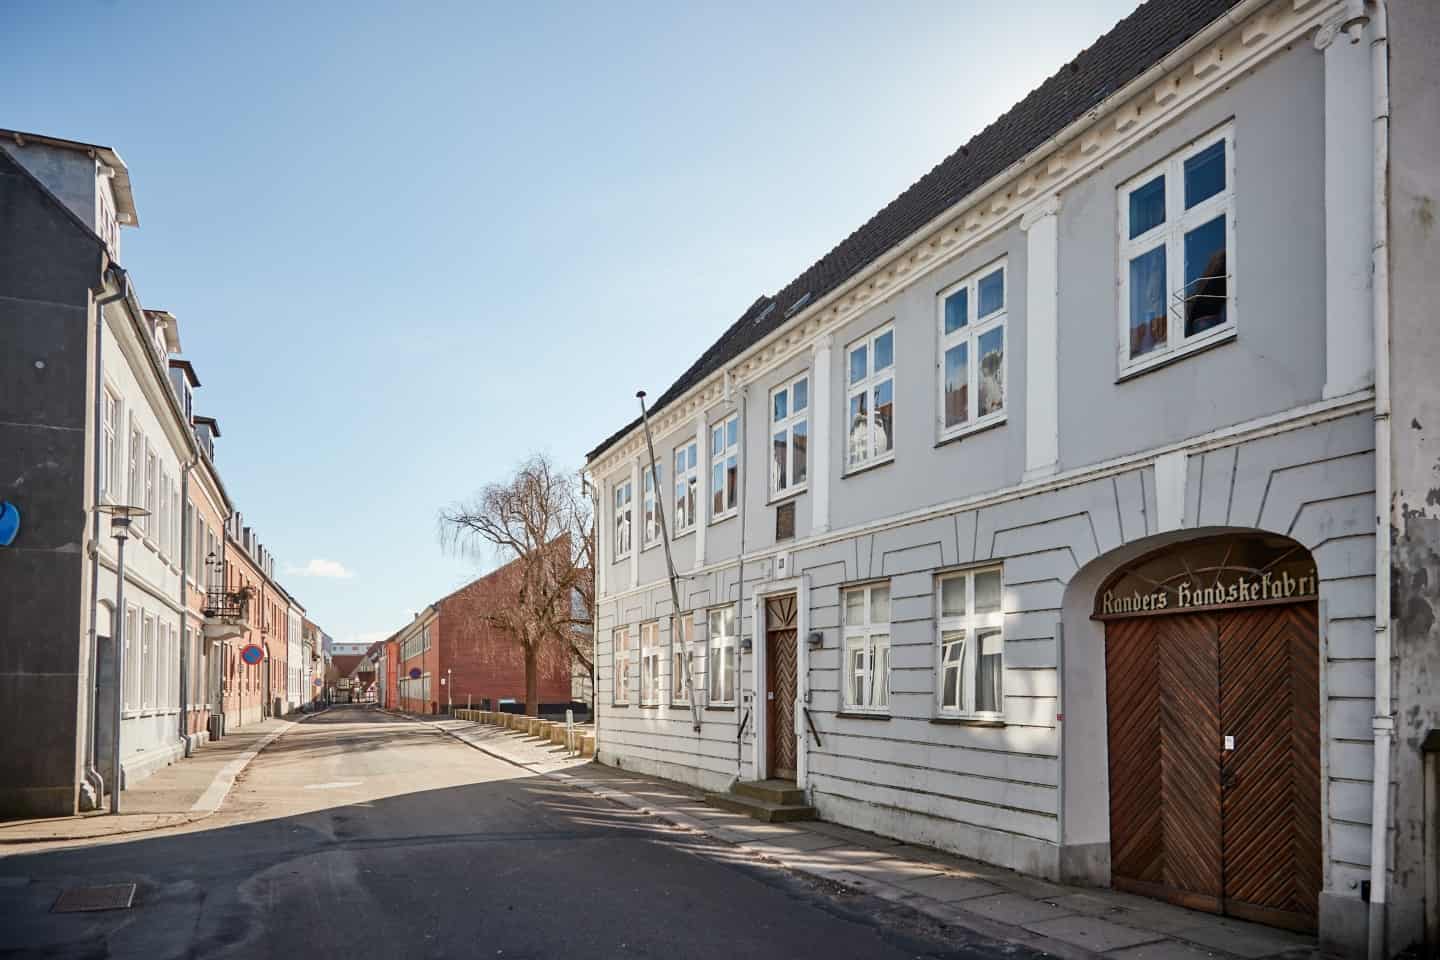 Bygherre vil rive historiske bygninger ned: stritter imod | amtsavisen.dk